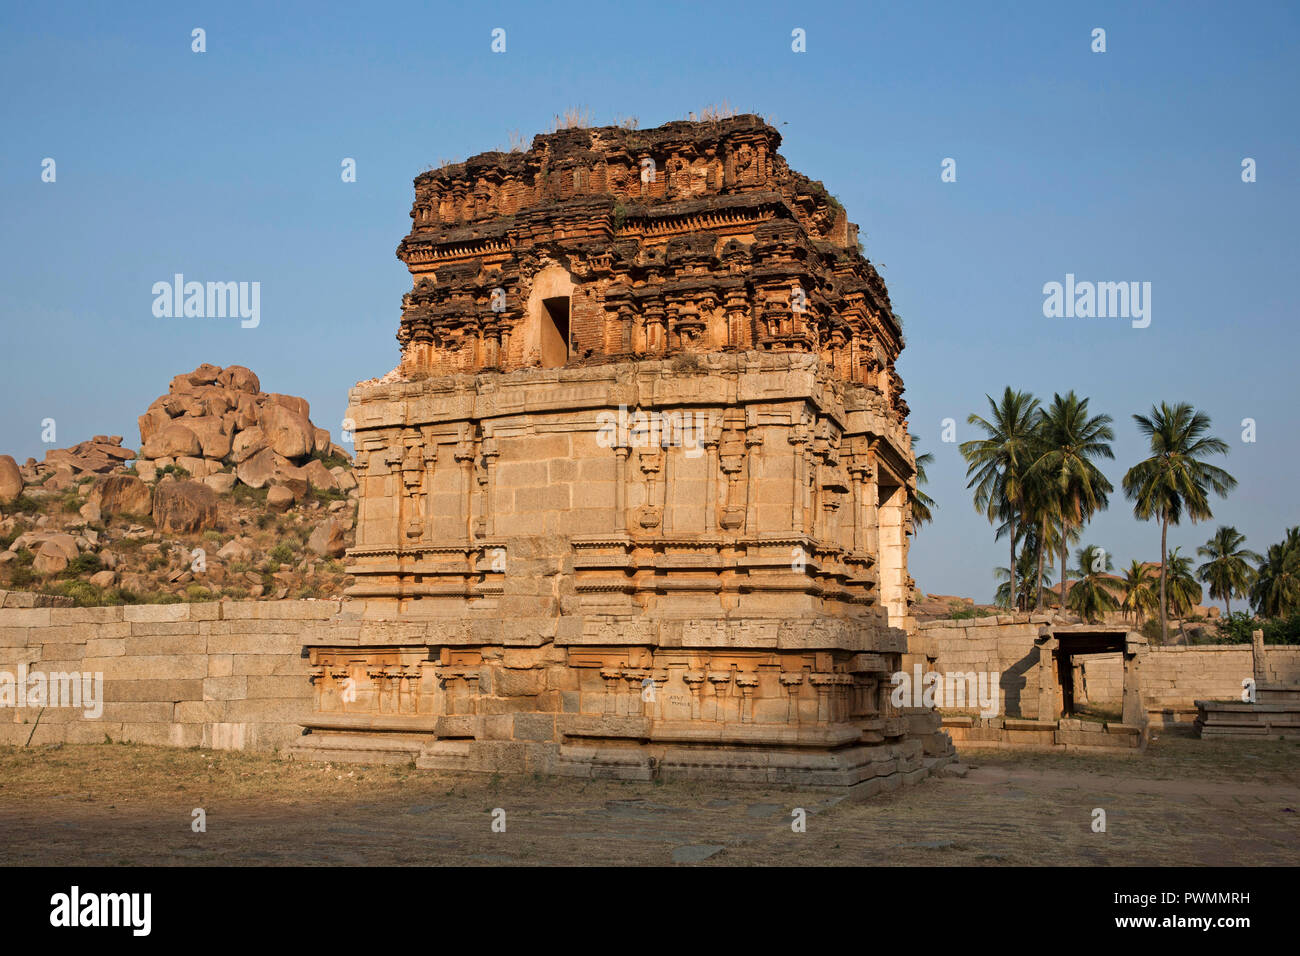 Uno de los edificios que componen el Achyutaraya Temple en Hampi, la antigua capital del Reino Vijayanagara, Karnataka, India Foto de stock